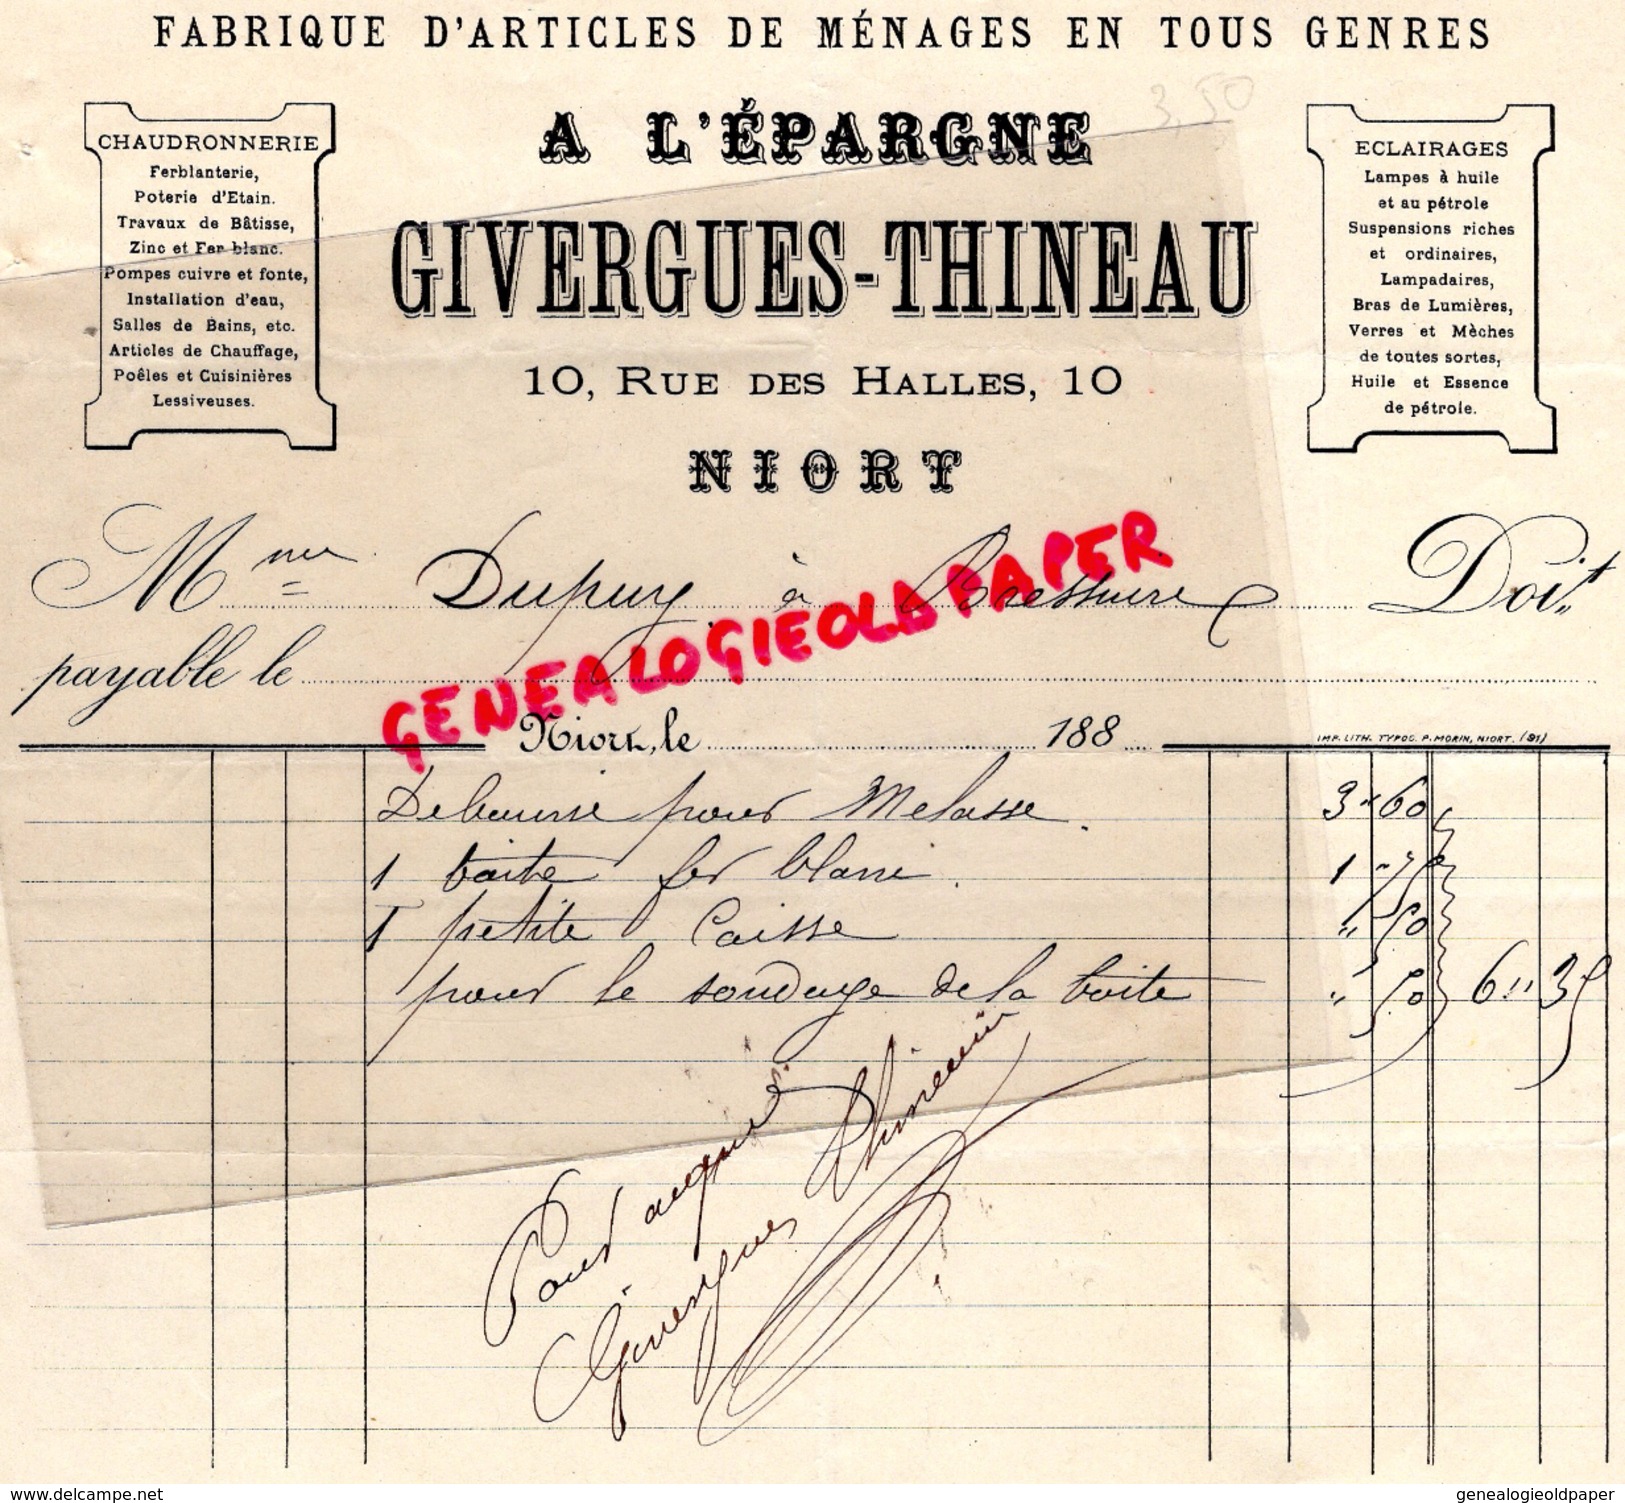 79- NIORT - FACTURE GIVERGUES THINEAU- FABRIQUE ARTICLES MENAGES- A L' EPARGNE- CHAUDRONNERIE-10 RUE DES HALLES- 1880 - Petits Métiers